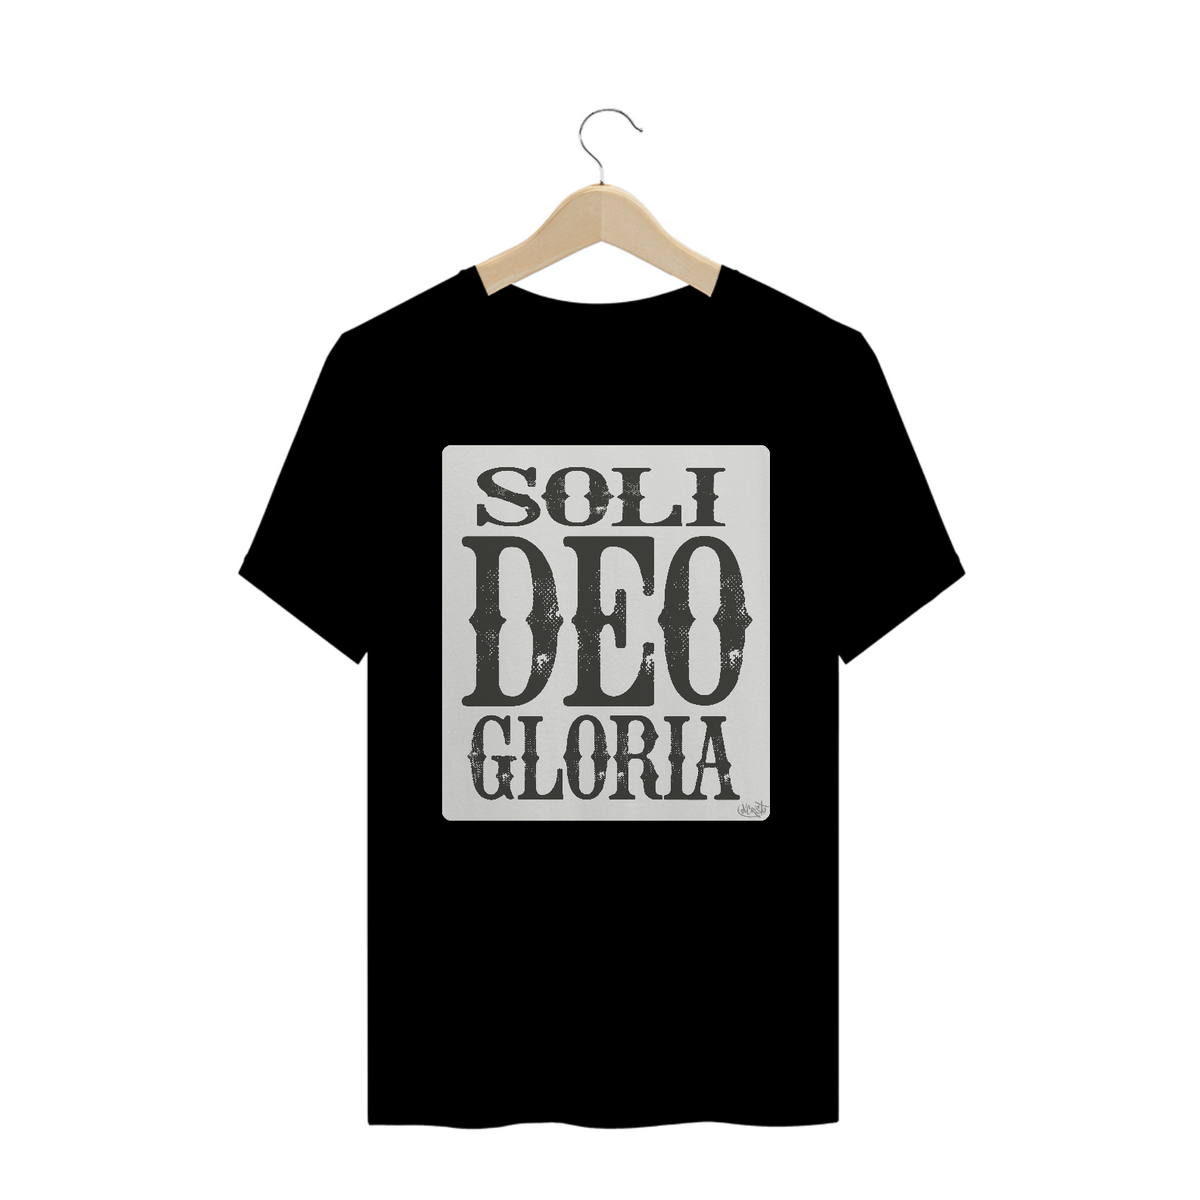 Nome do produto: Camiseta Soli Deo Gloria - cores escuras